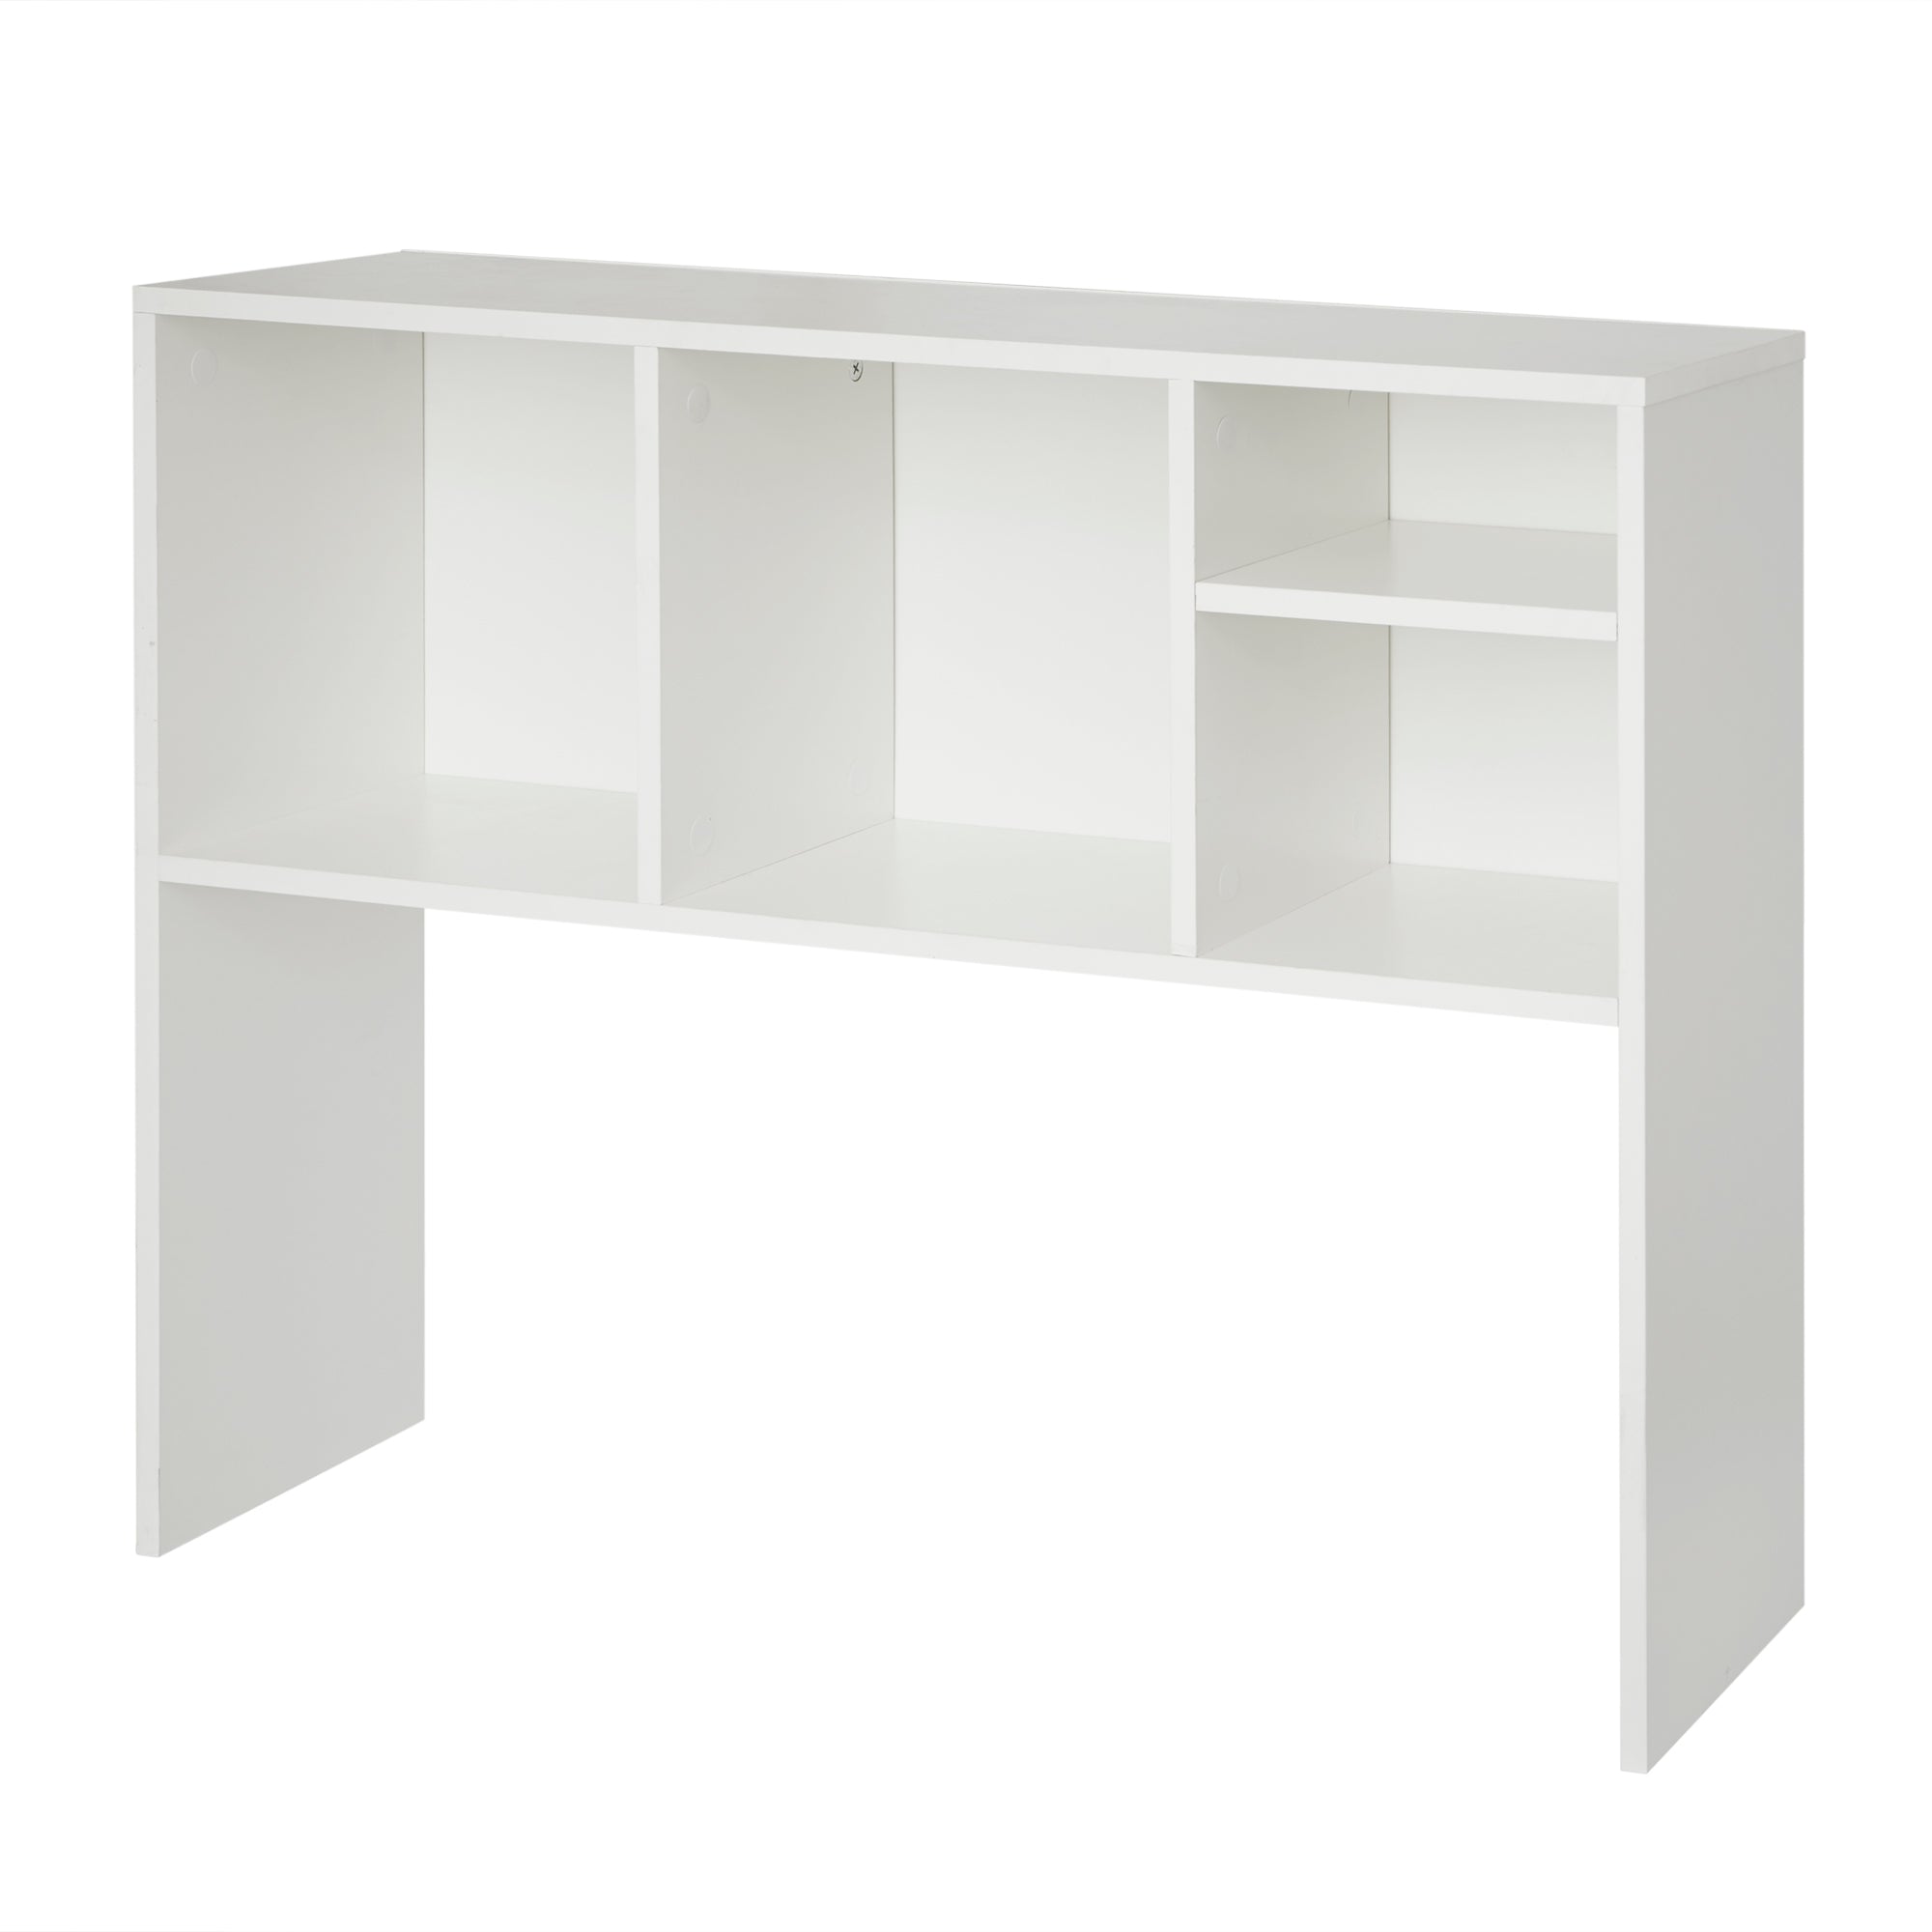 The College Cube - Dorm Desk Bookshelf - White Upper Desk Shelving